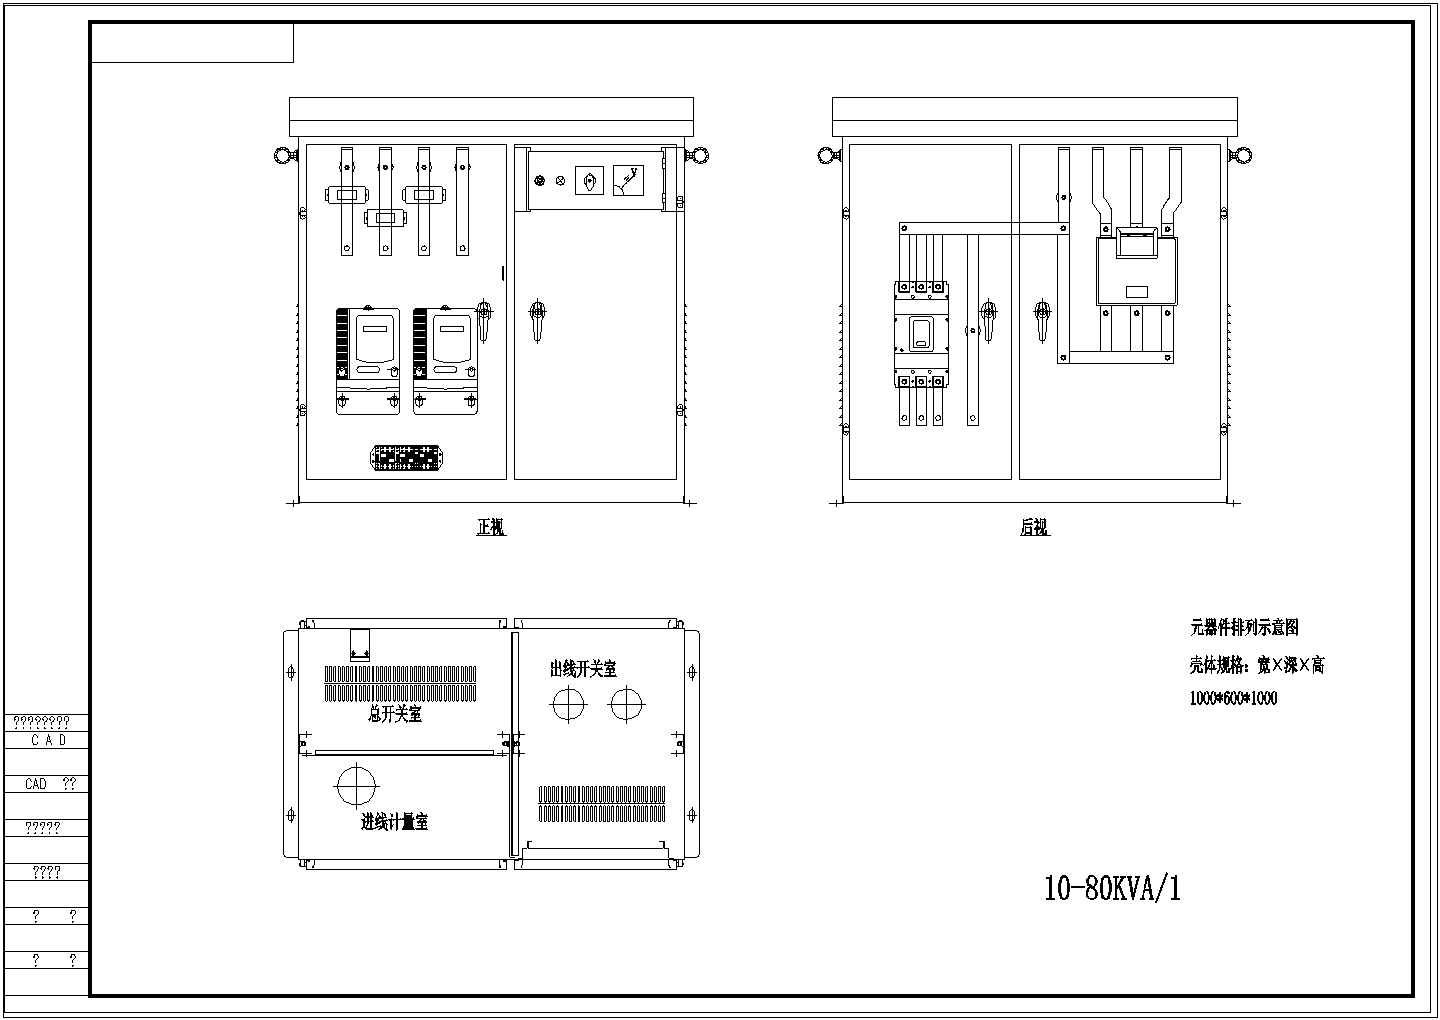 低压元器件、表箱、柜体块参照图